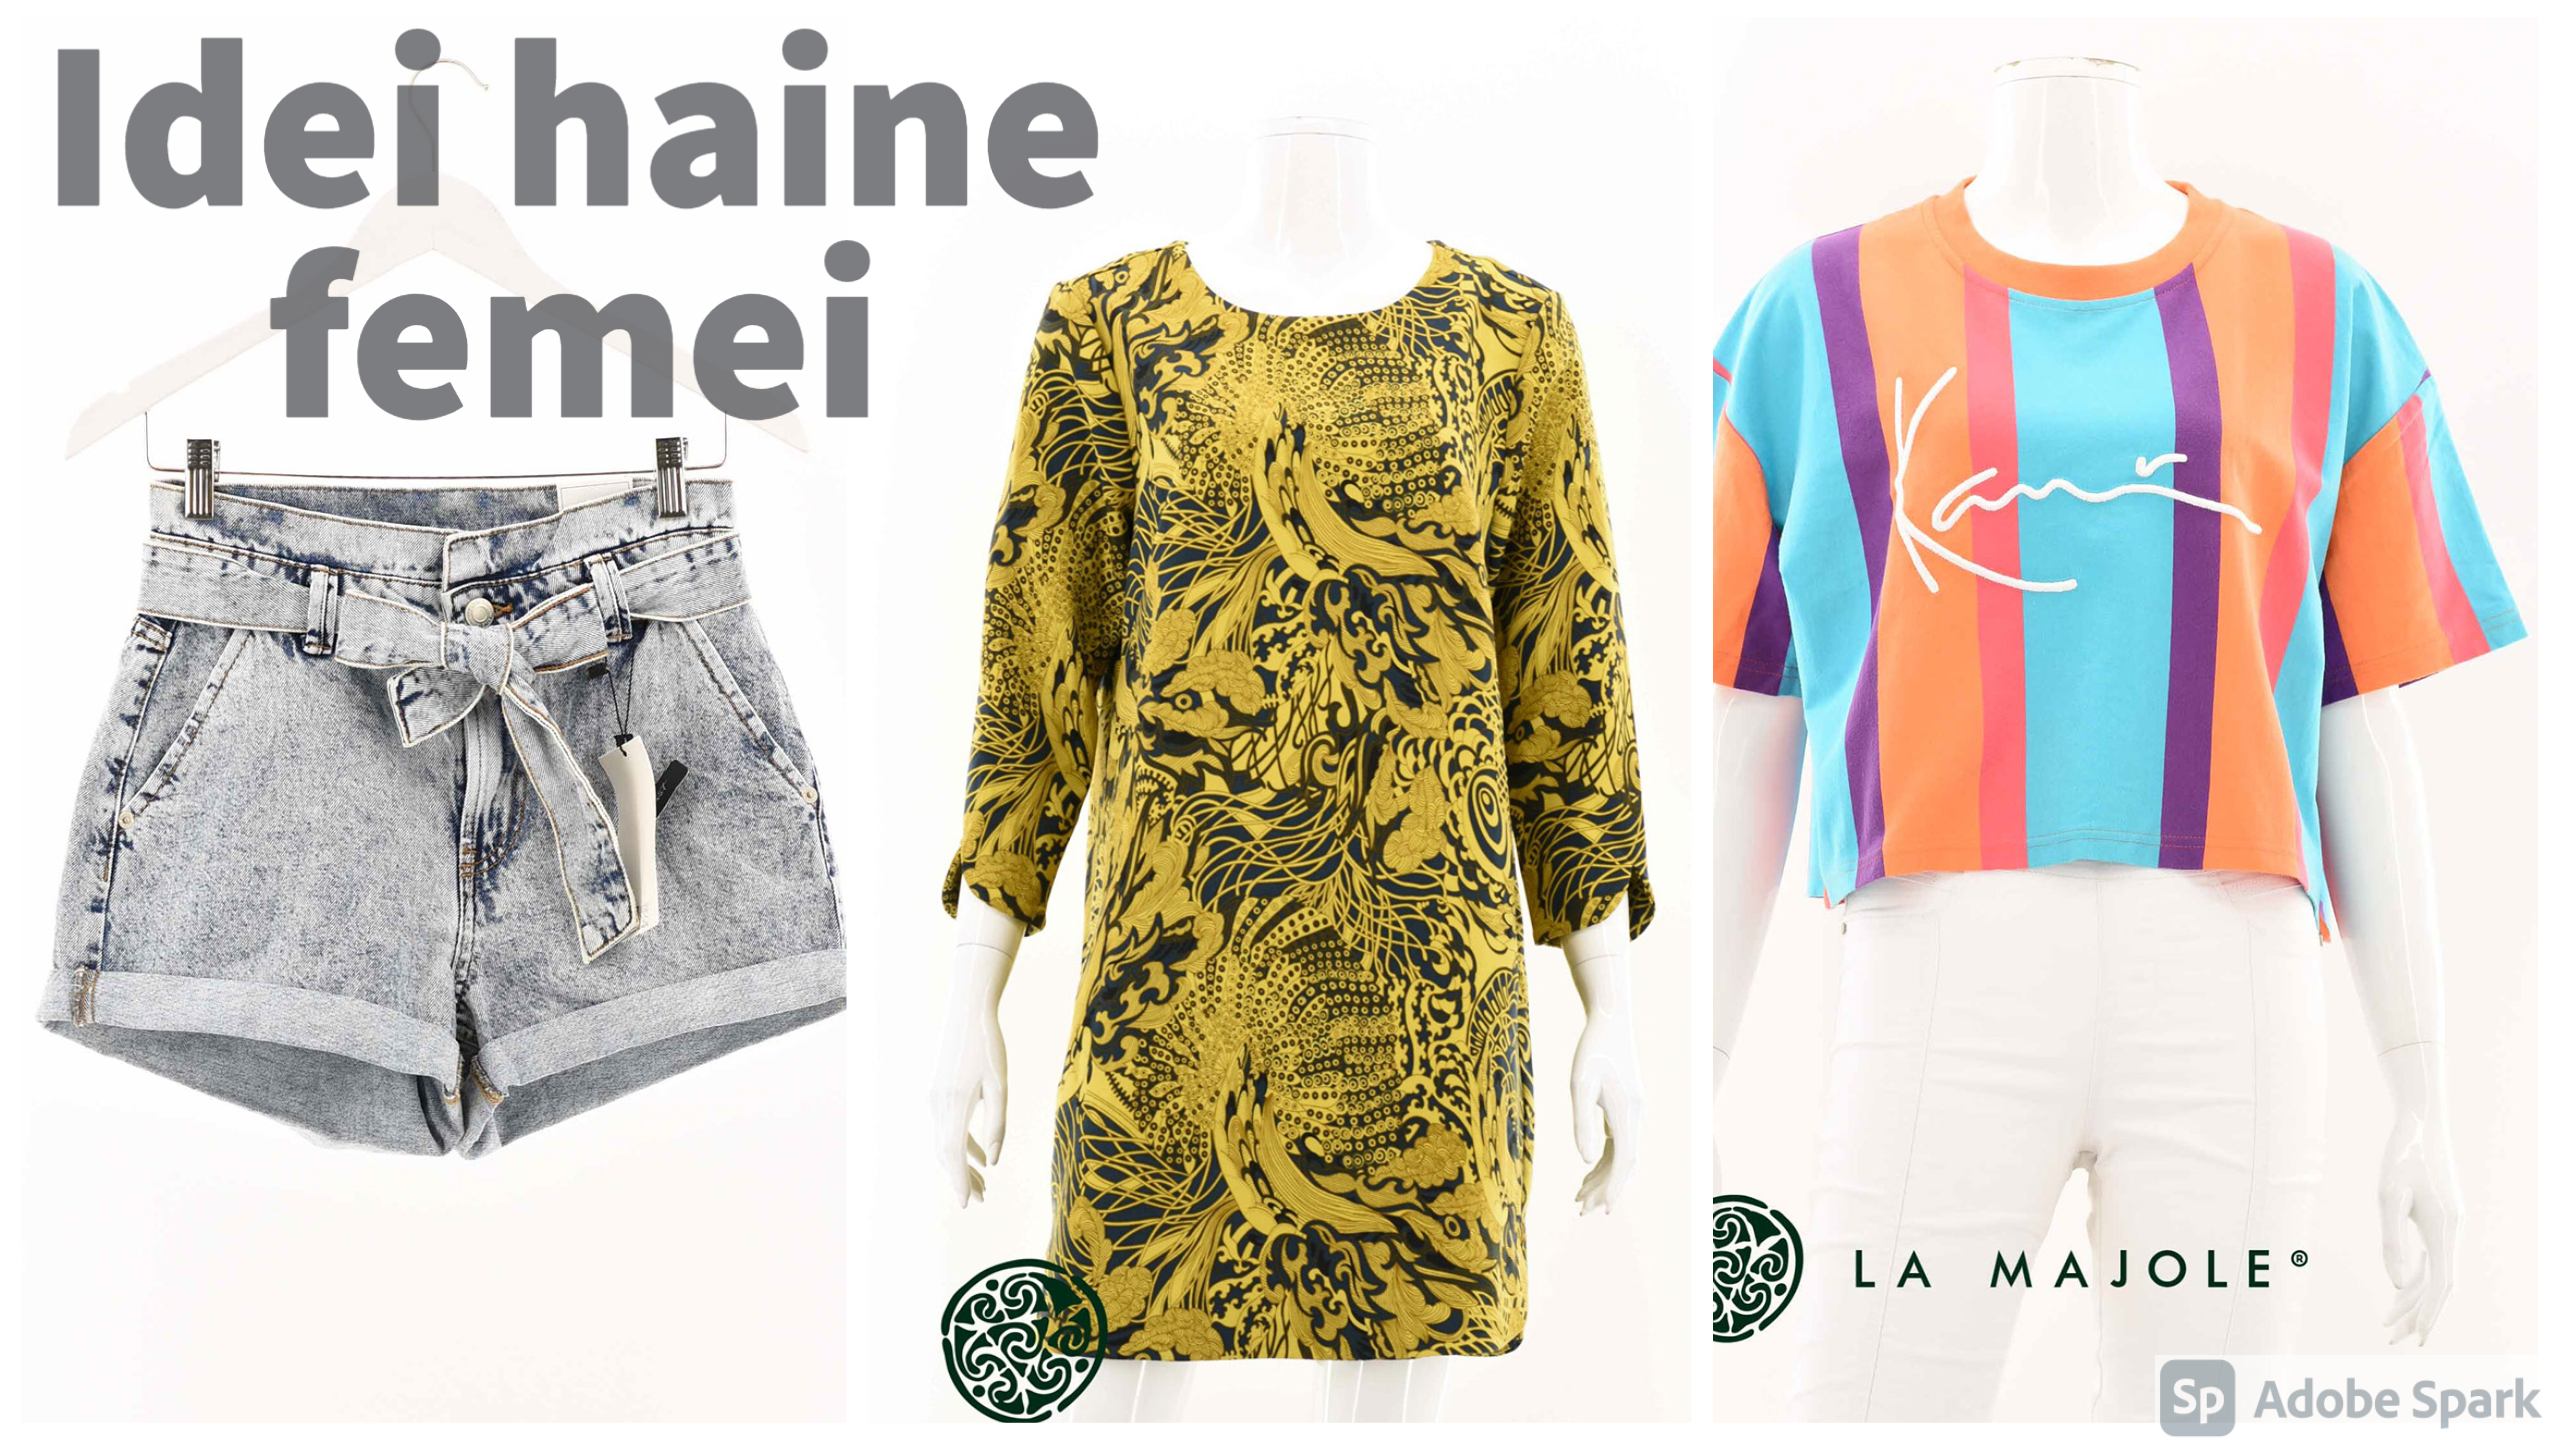 tournament Tectonic Incompatible Haine femei și haine barbati: cele mai cool idei de haine pentru vară -  Daniela Otet